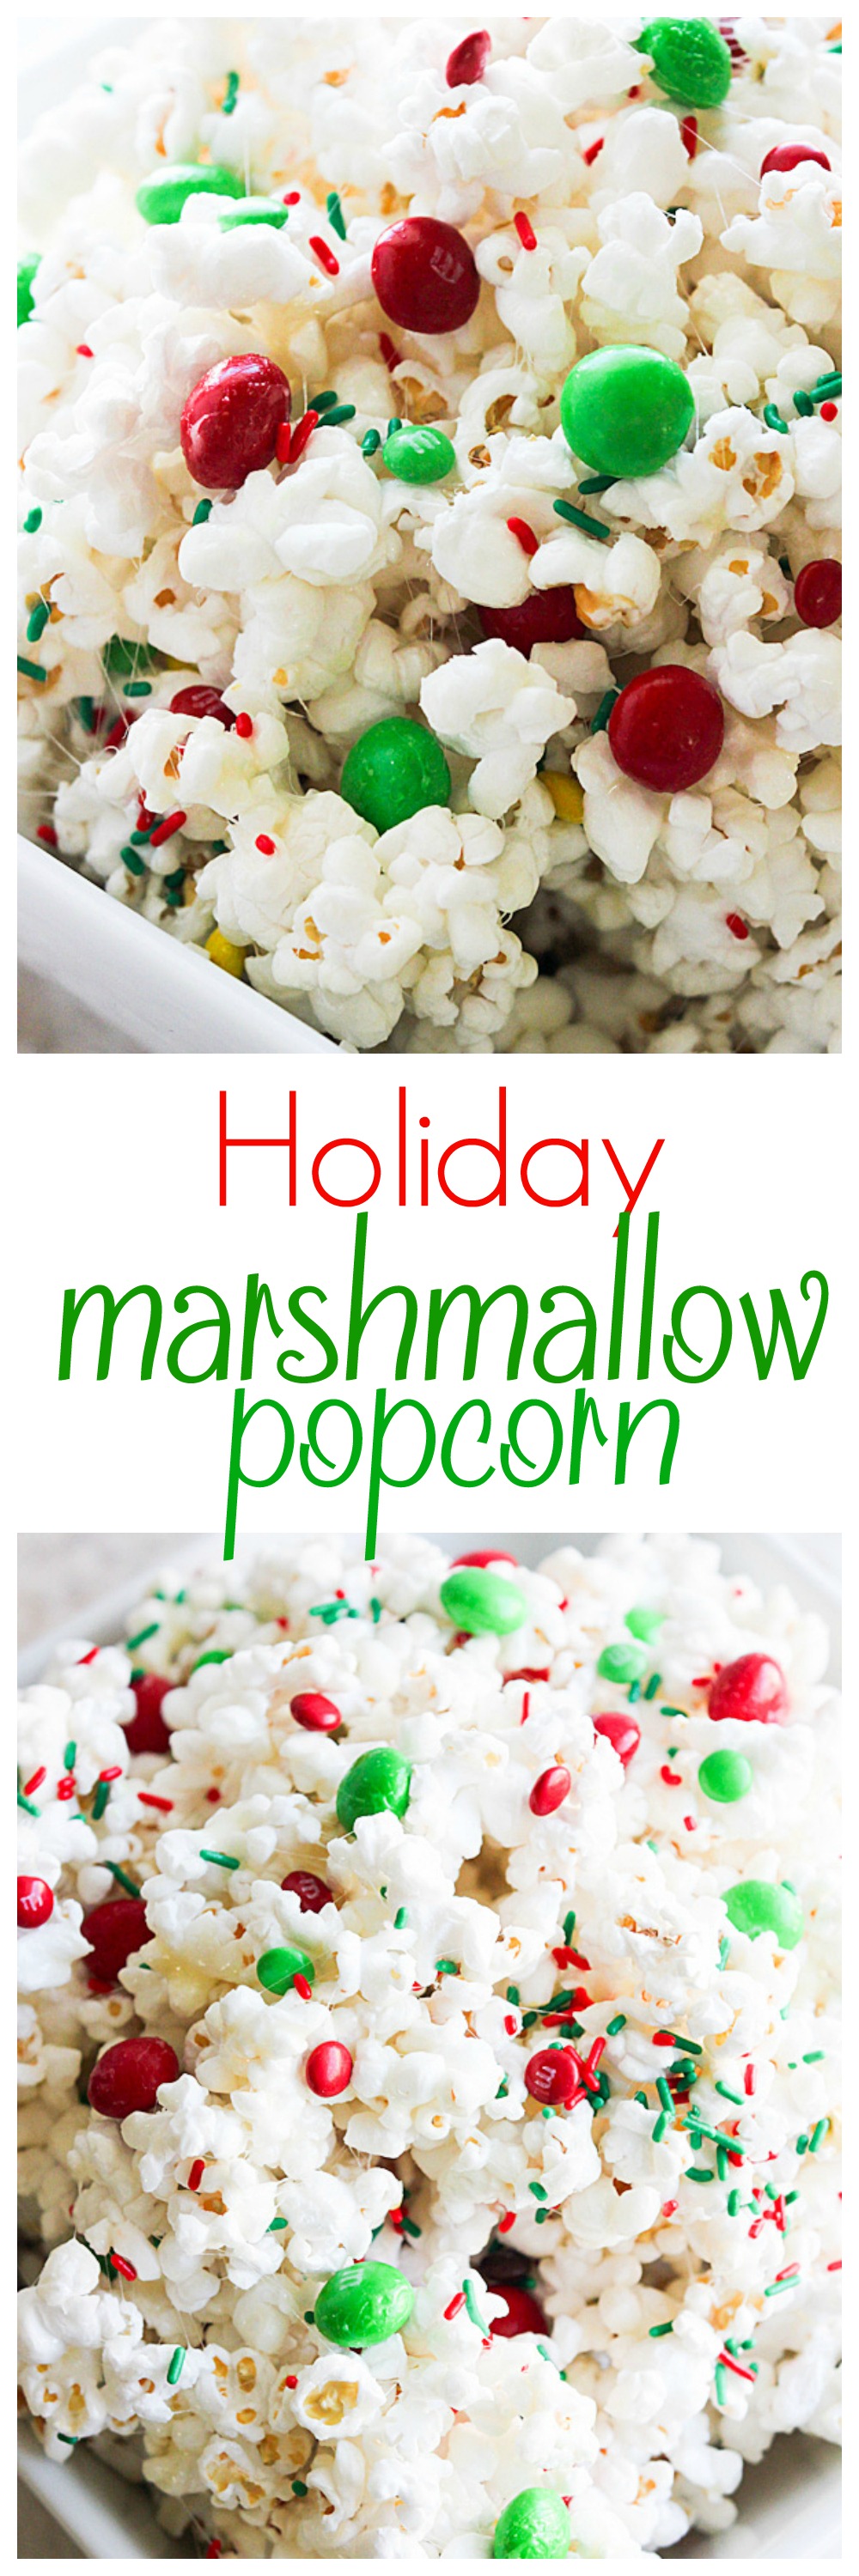 Holiday Marshmallow Popcorn Recipe | Mandy's Recipe Box